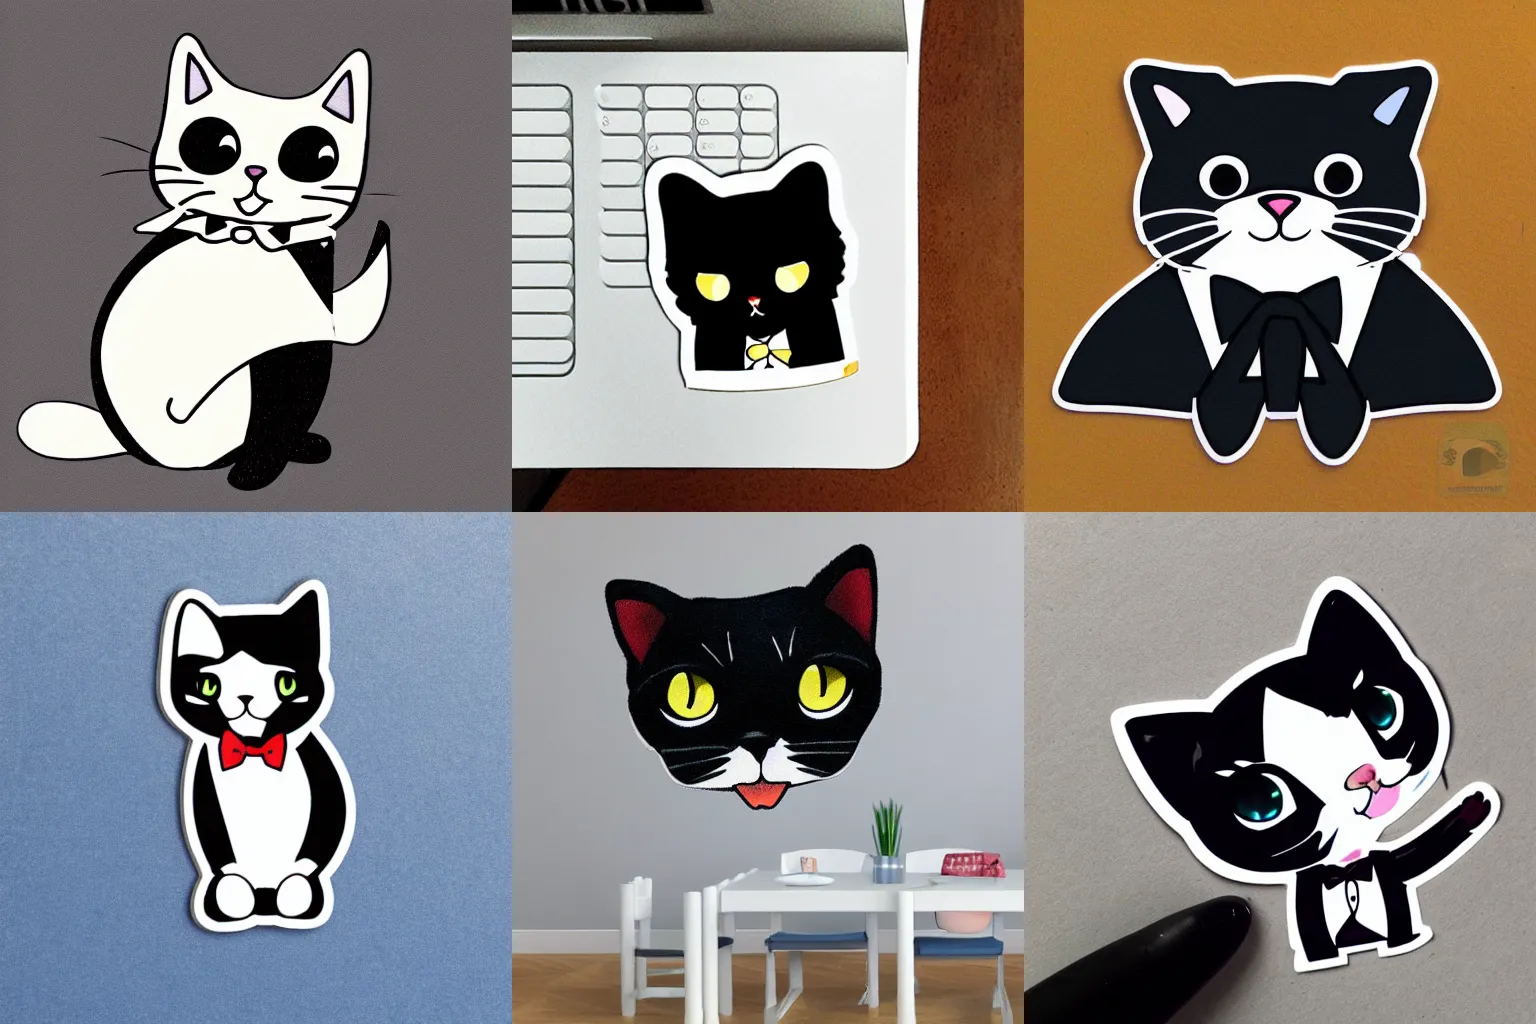 Prompt: sticker illustration of a tuxedo kitty